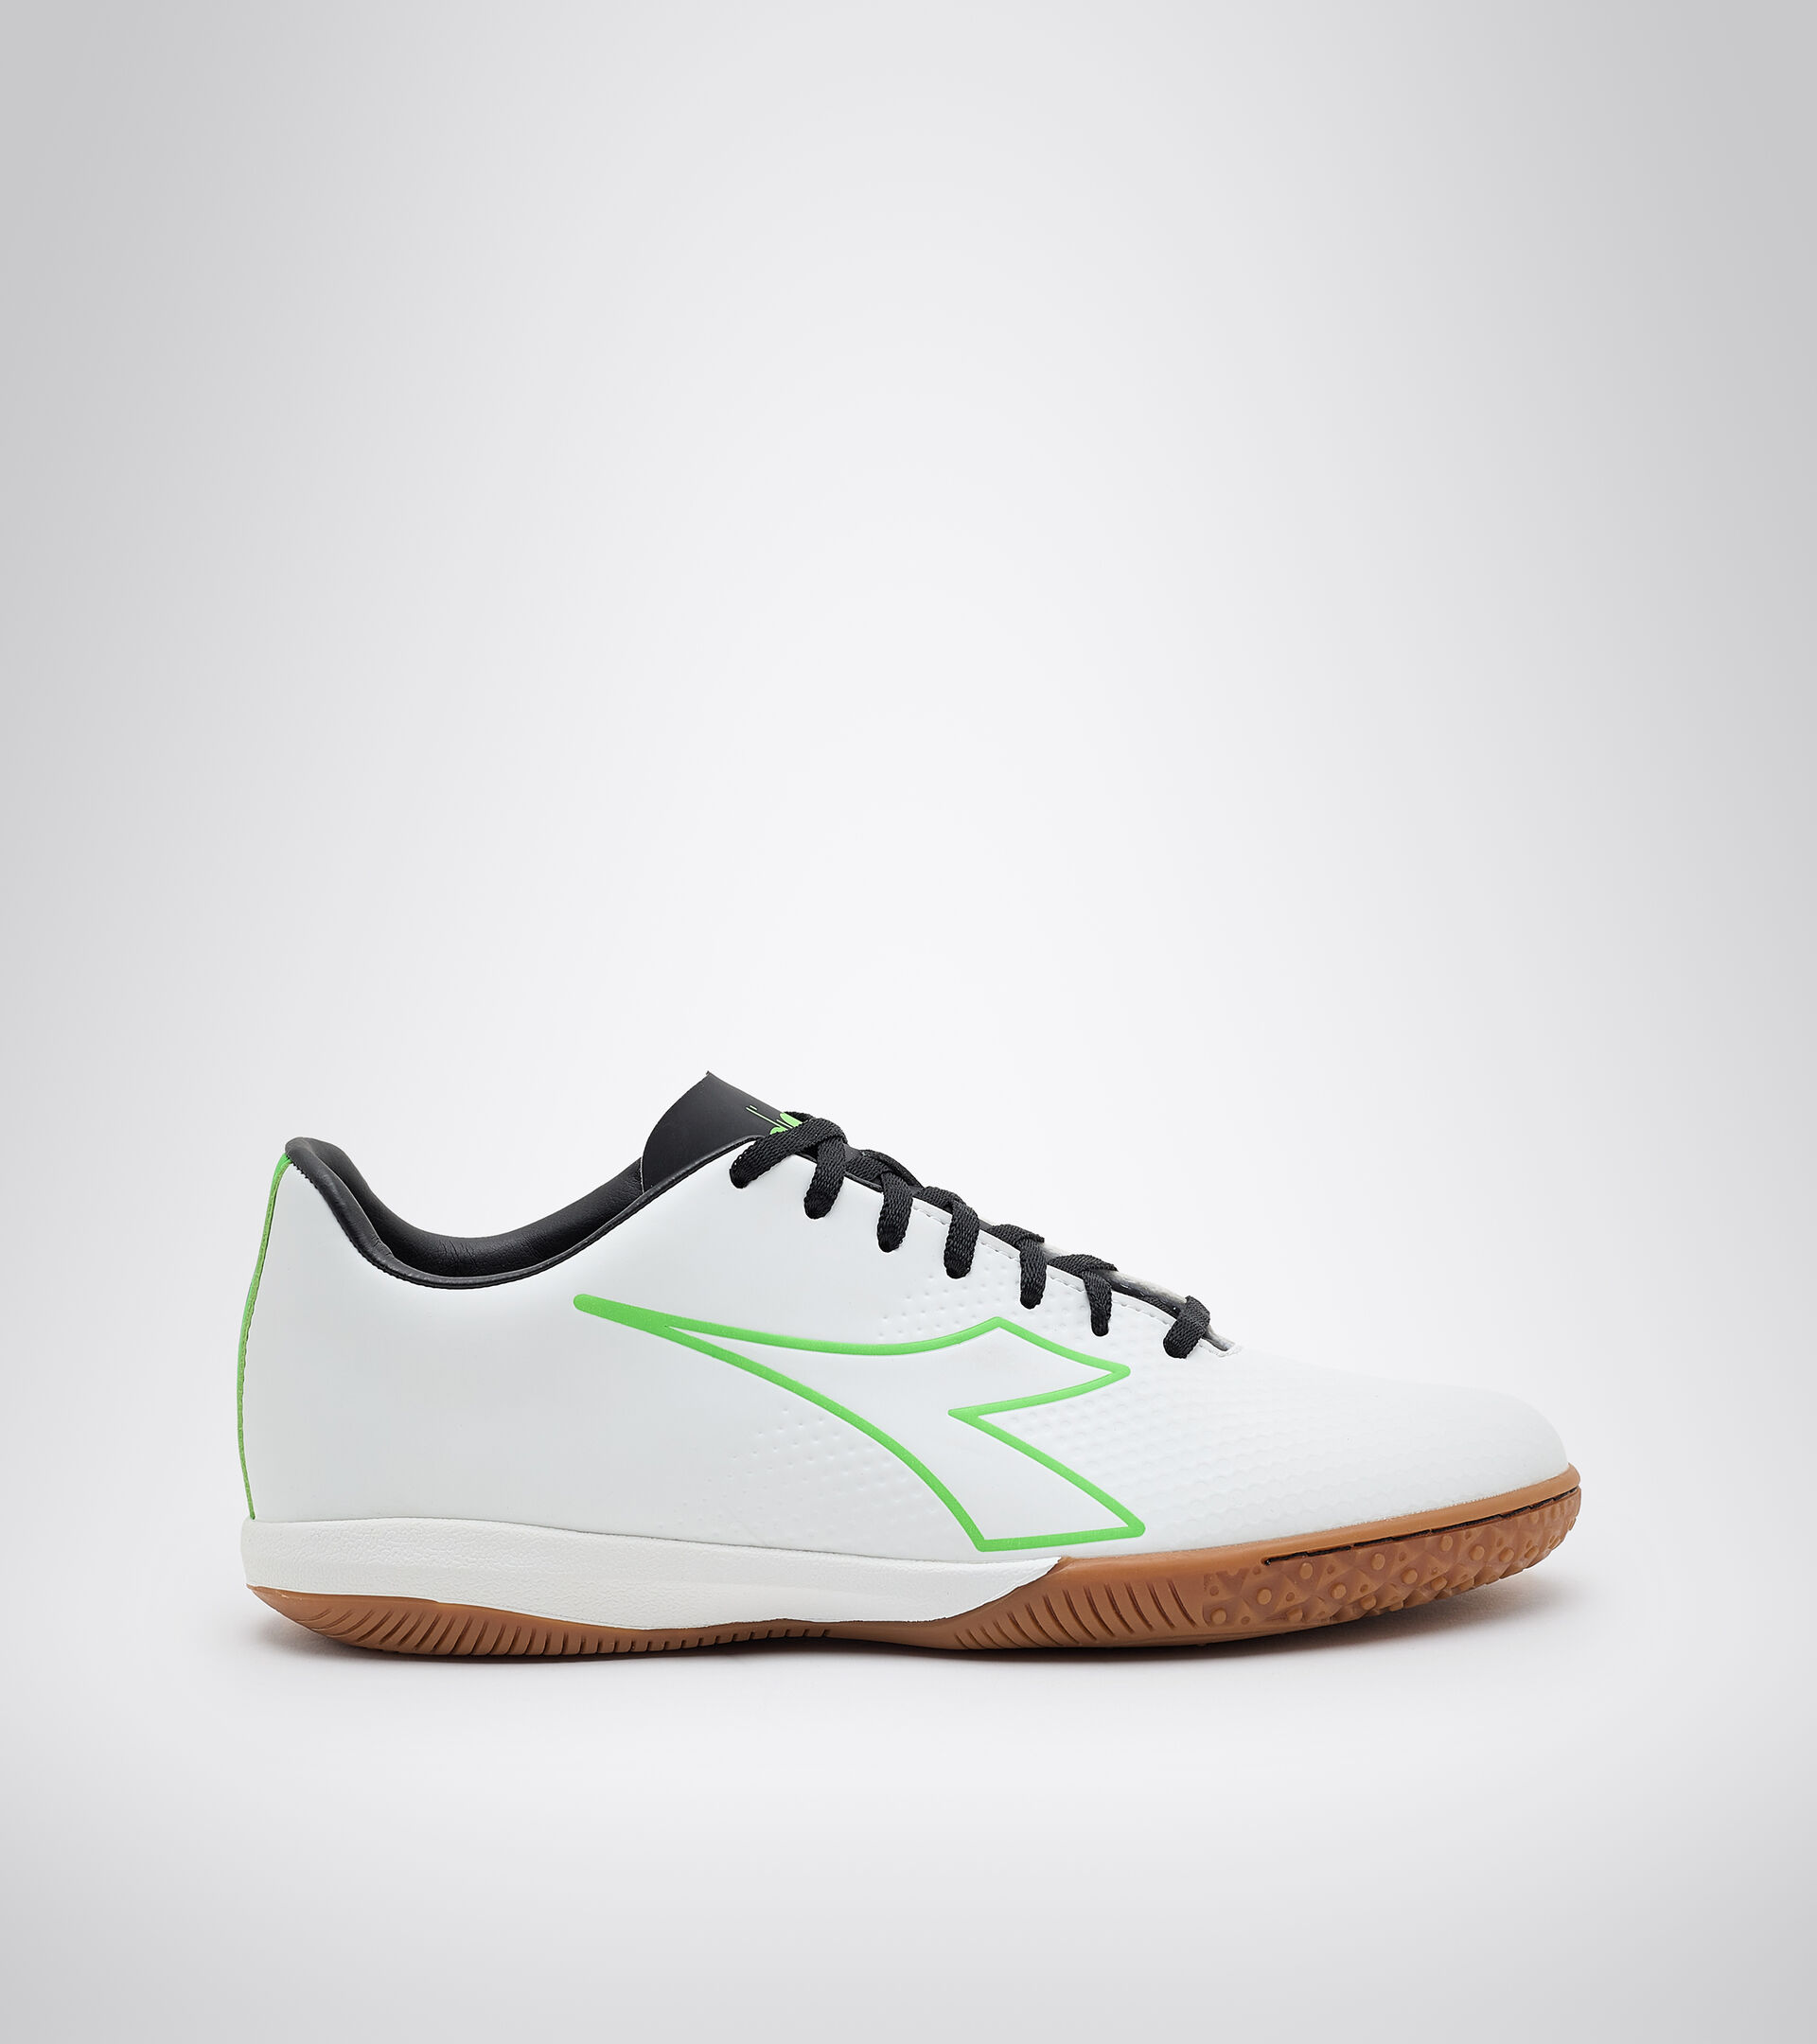 Futsal-Schuh für Indoor-Böden und Parkett - Herren PICHICHI 4 IDR WEISS/GRUEN FLUO/SCHWARZ - Diadora